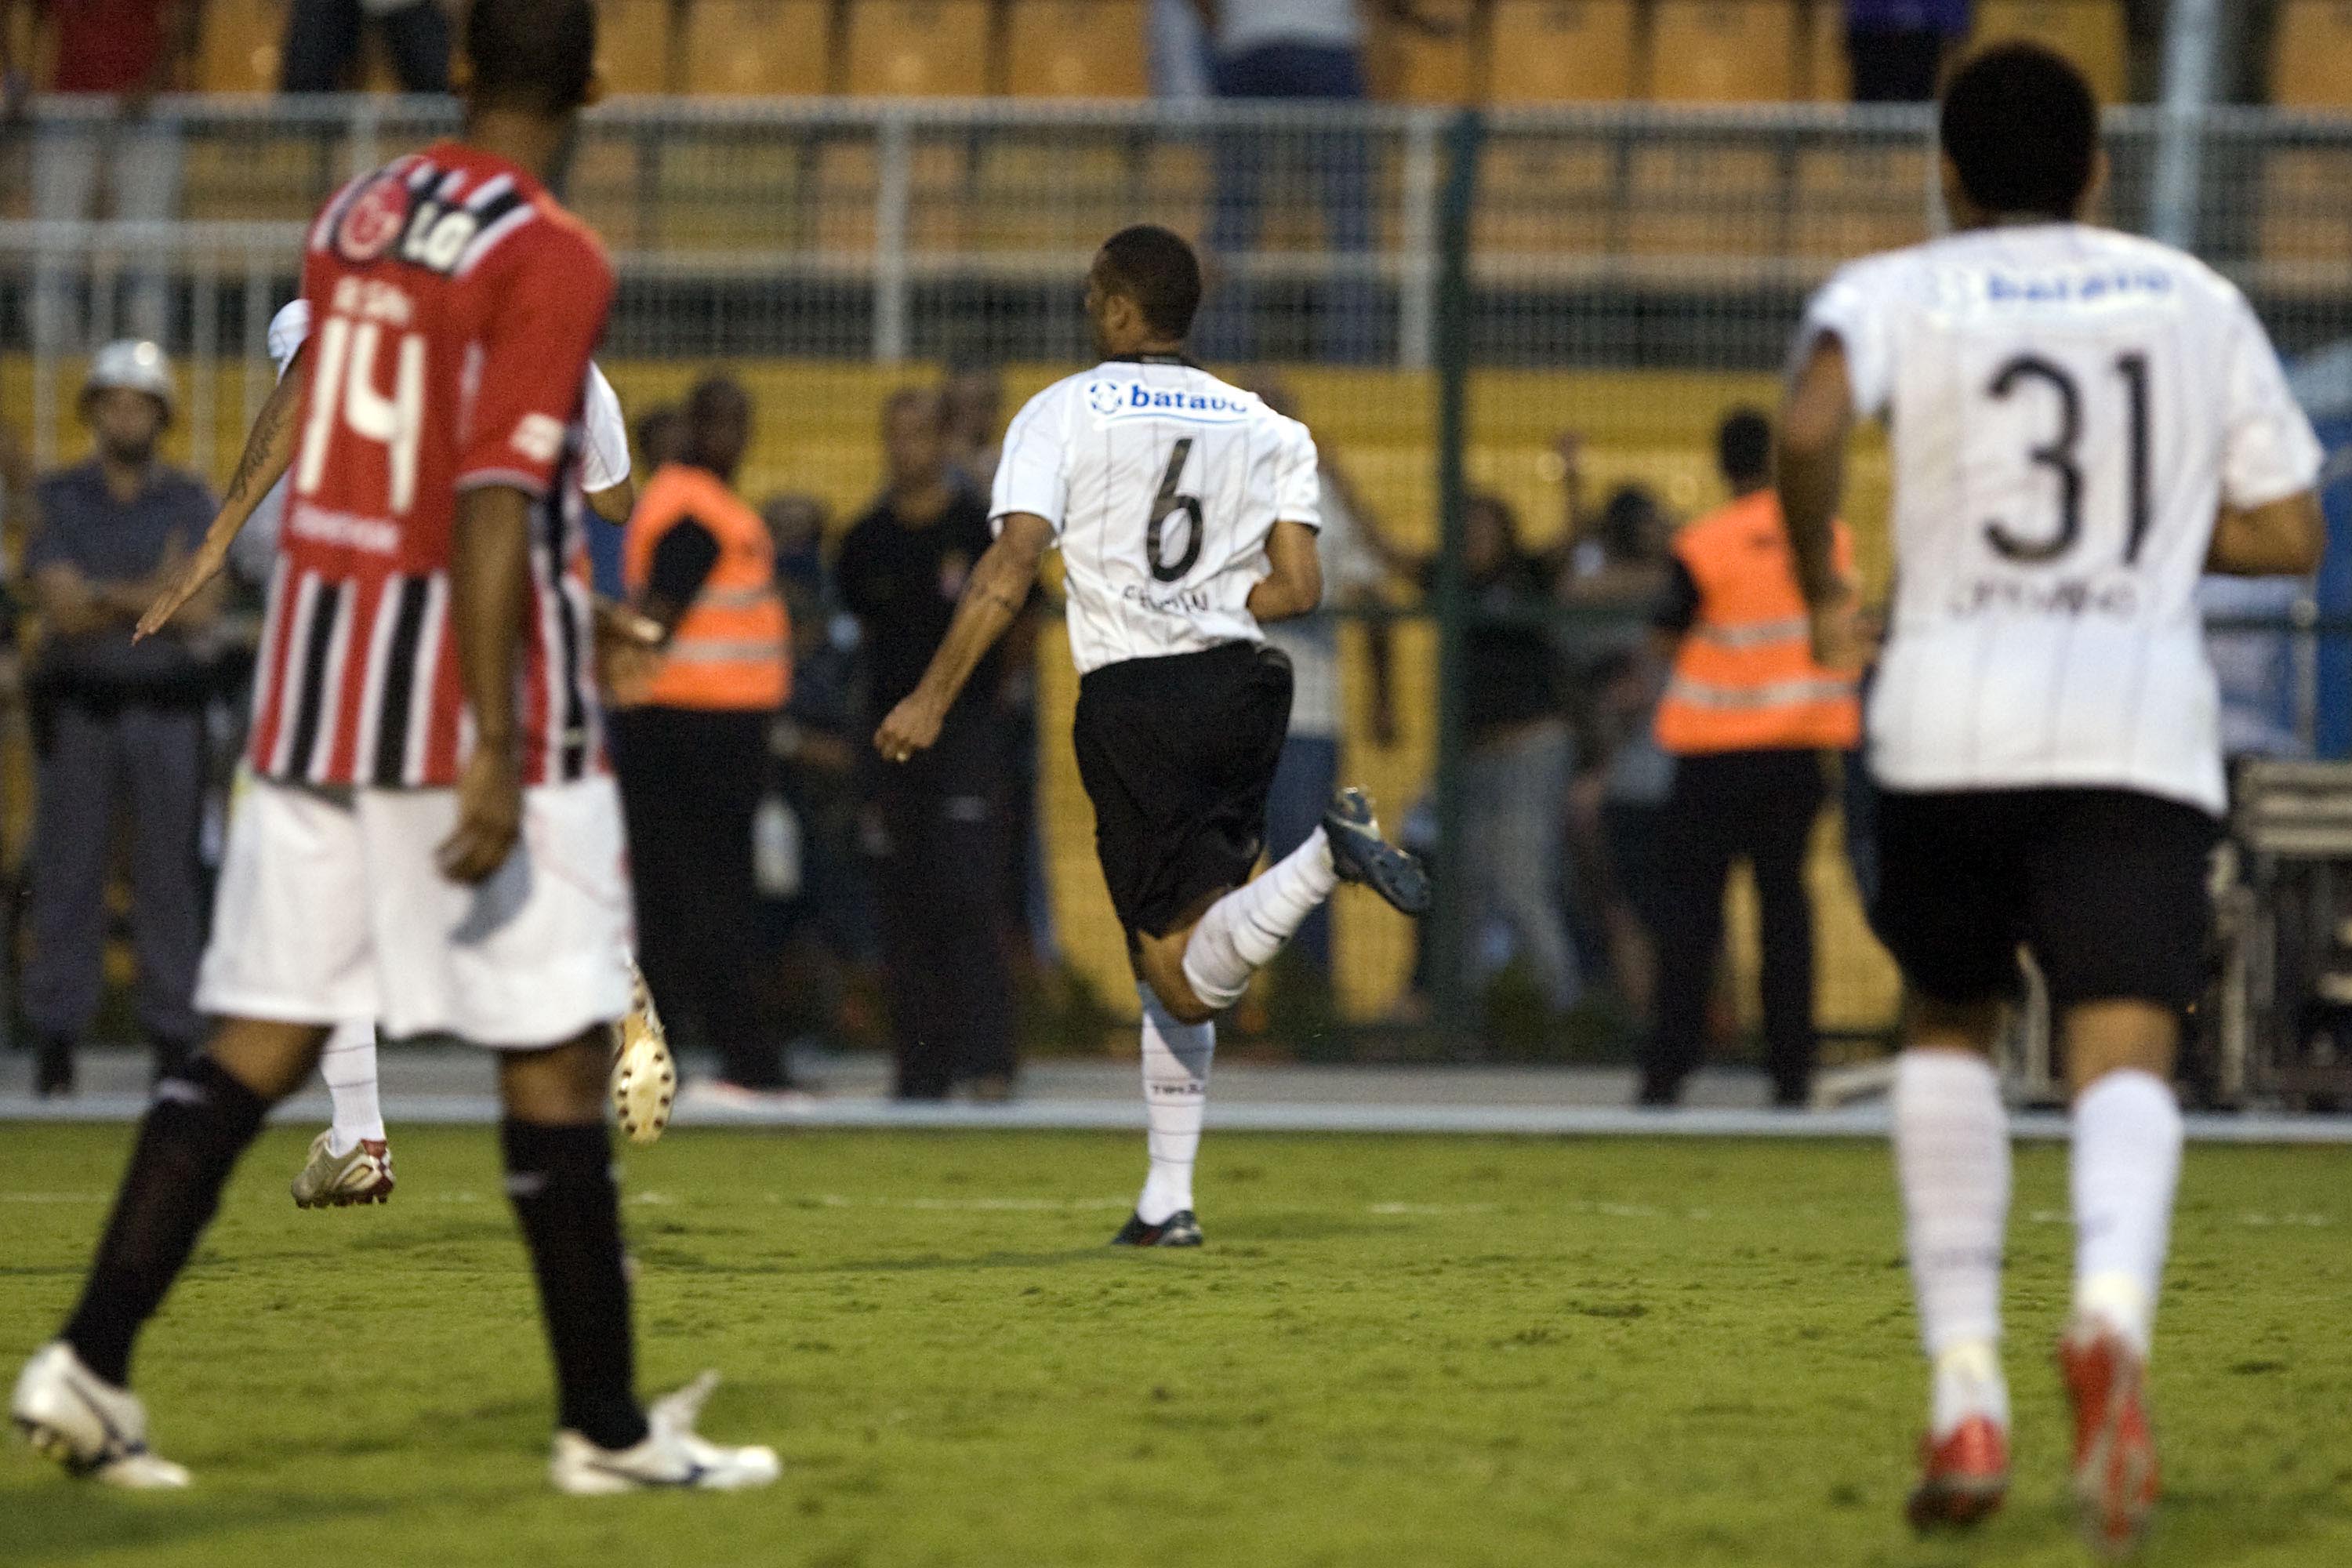 Corinthians x São Paulo: Final do Paulistão opõe melhor time do